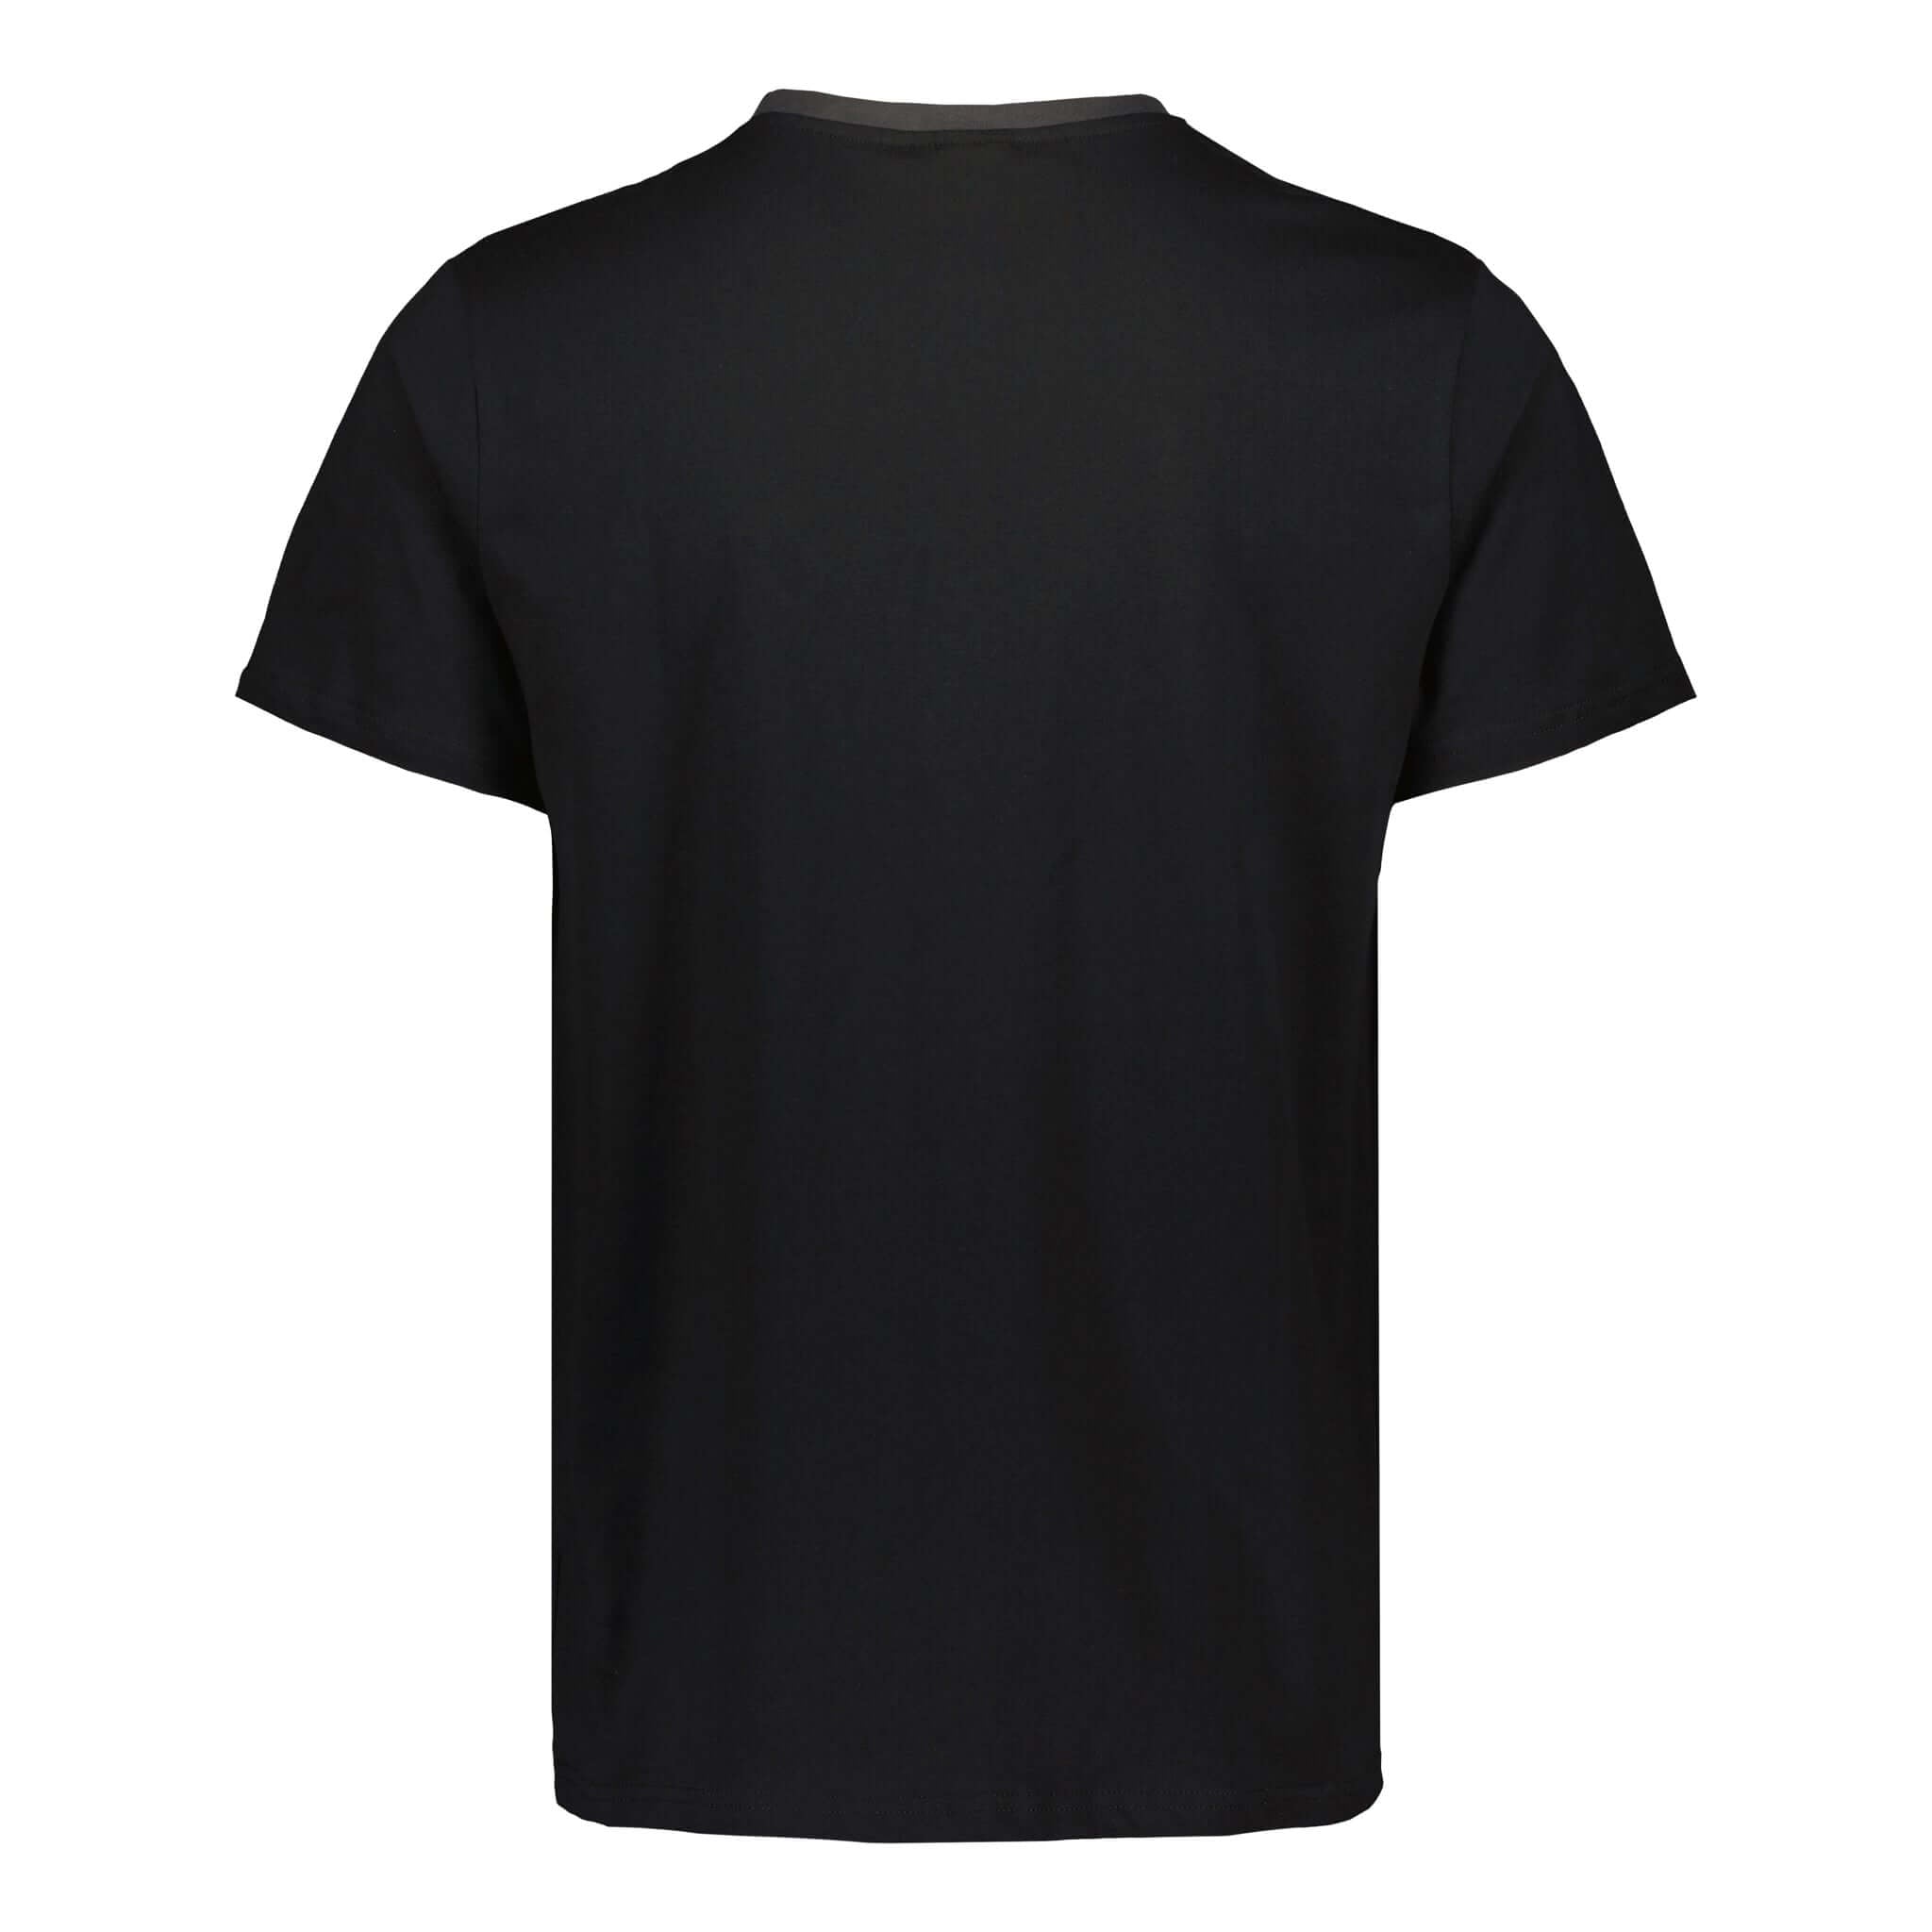 ENCE Block T-Shirt Black | ENCE Shop